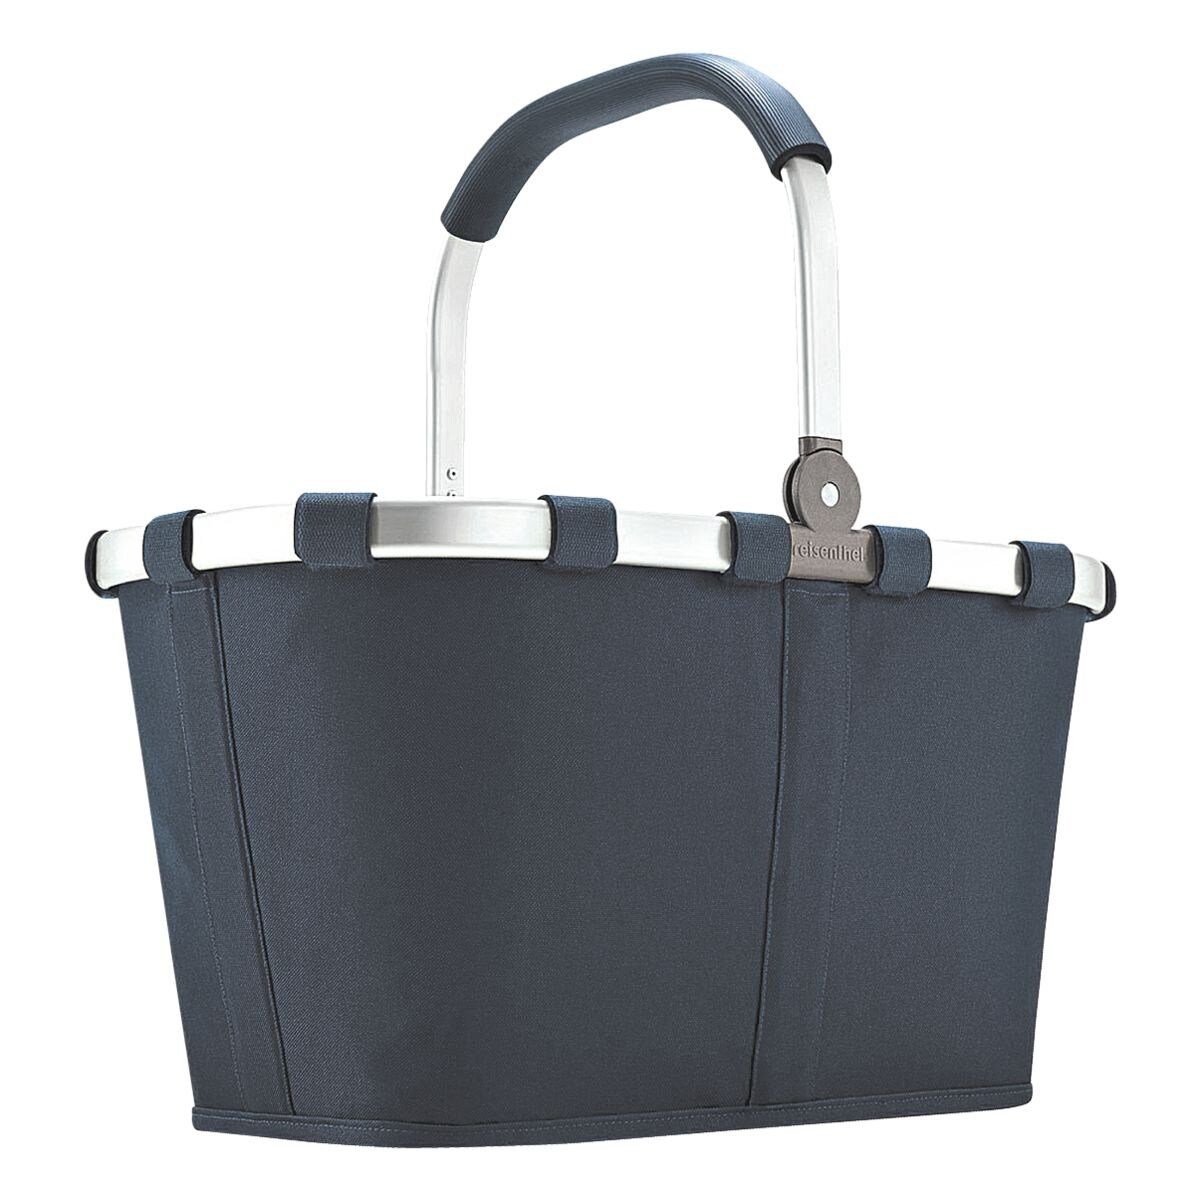 REISENTHEL® Einkaufskorb carrybag navy, zusammenklappbar, Innentasche mit Reißverschluss dunkelblau